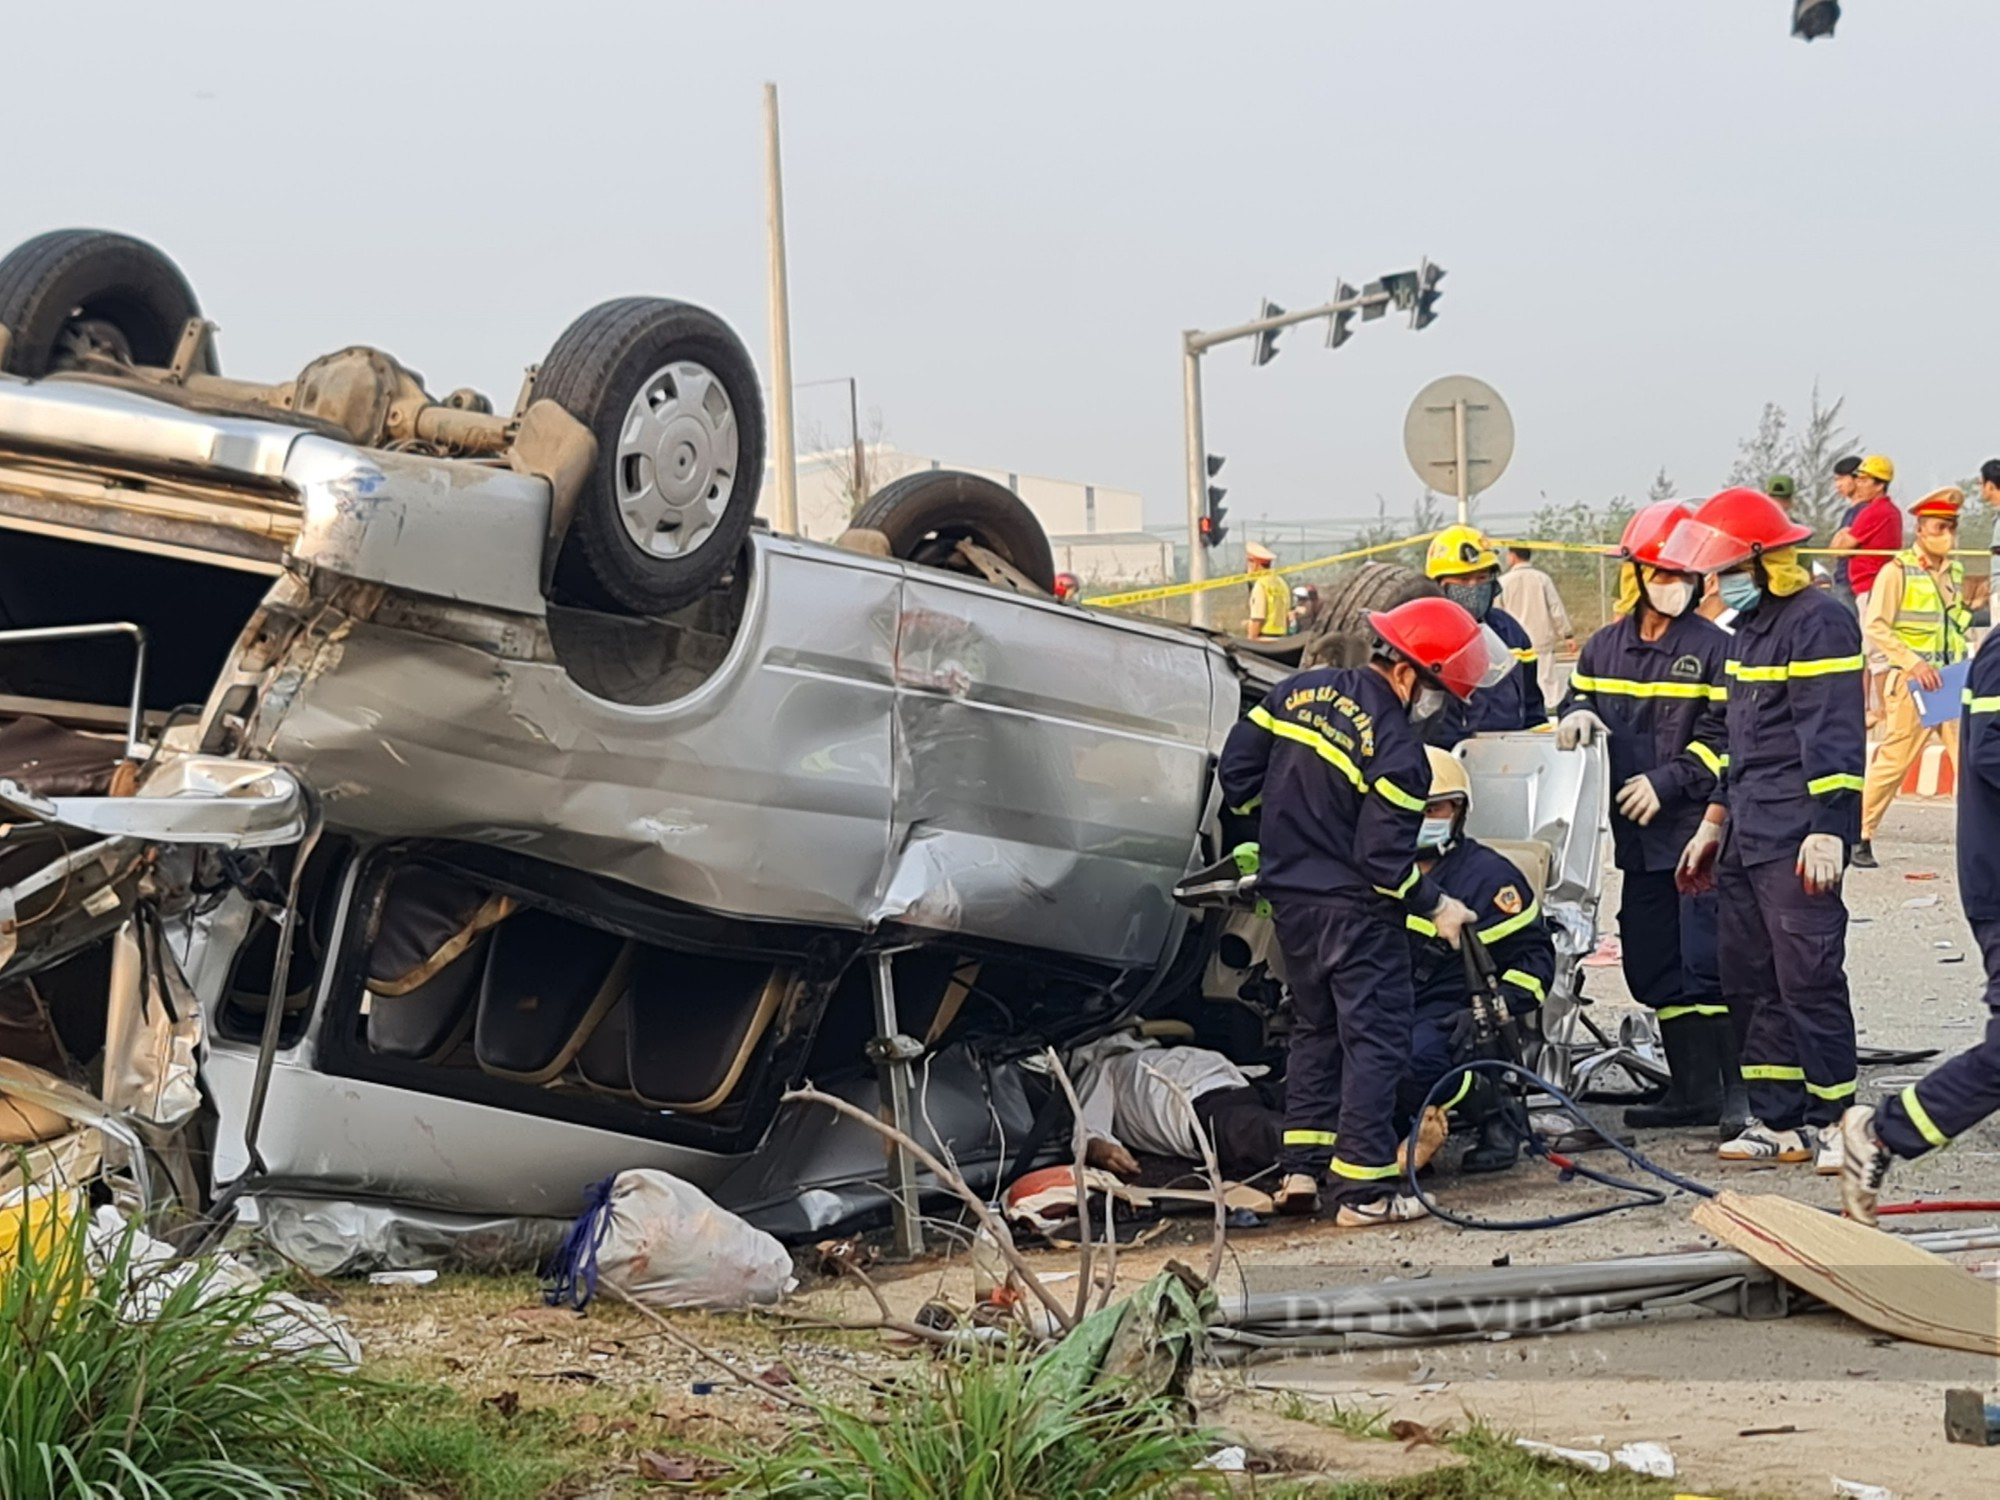 Vụ tai nạn ở huyện Núi Thành, Quảng Nam: Xe khách chở quá quy định, chạy nhanh - Ảnh 2.